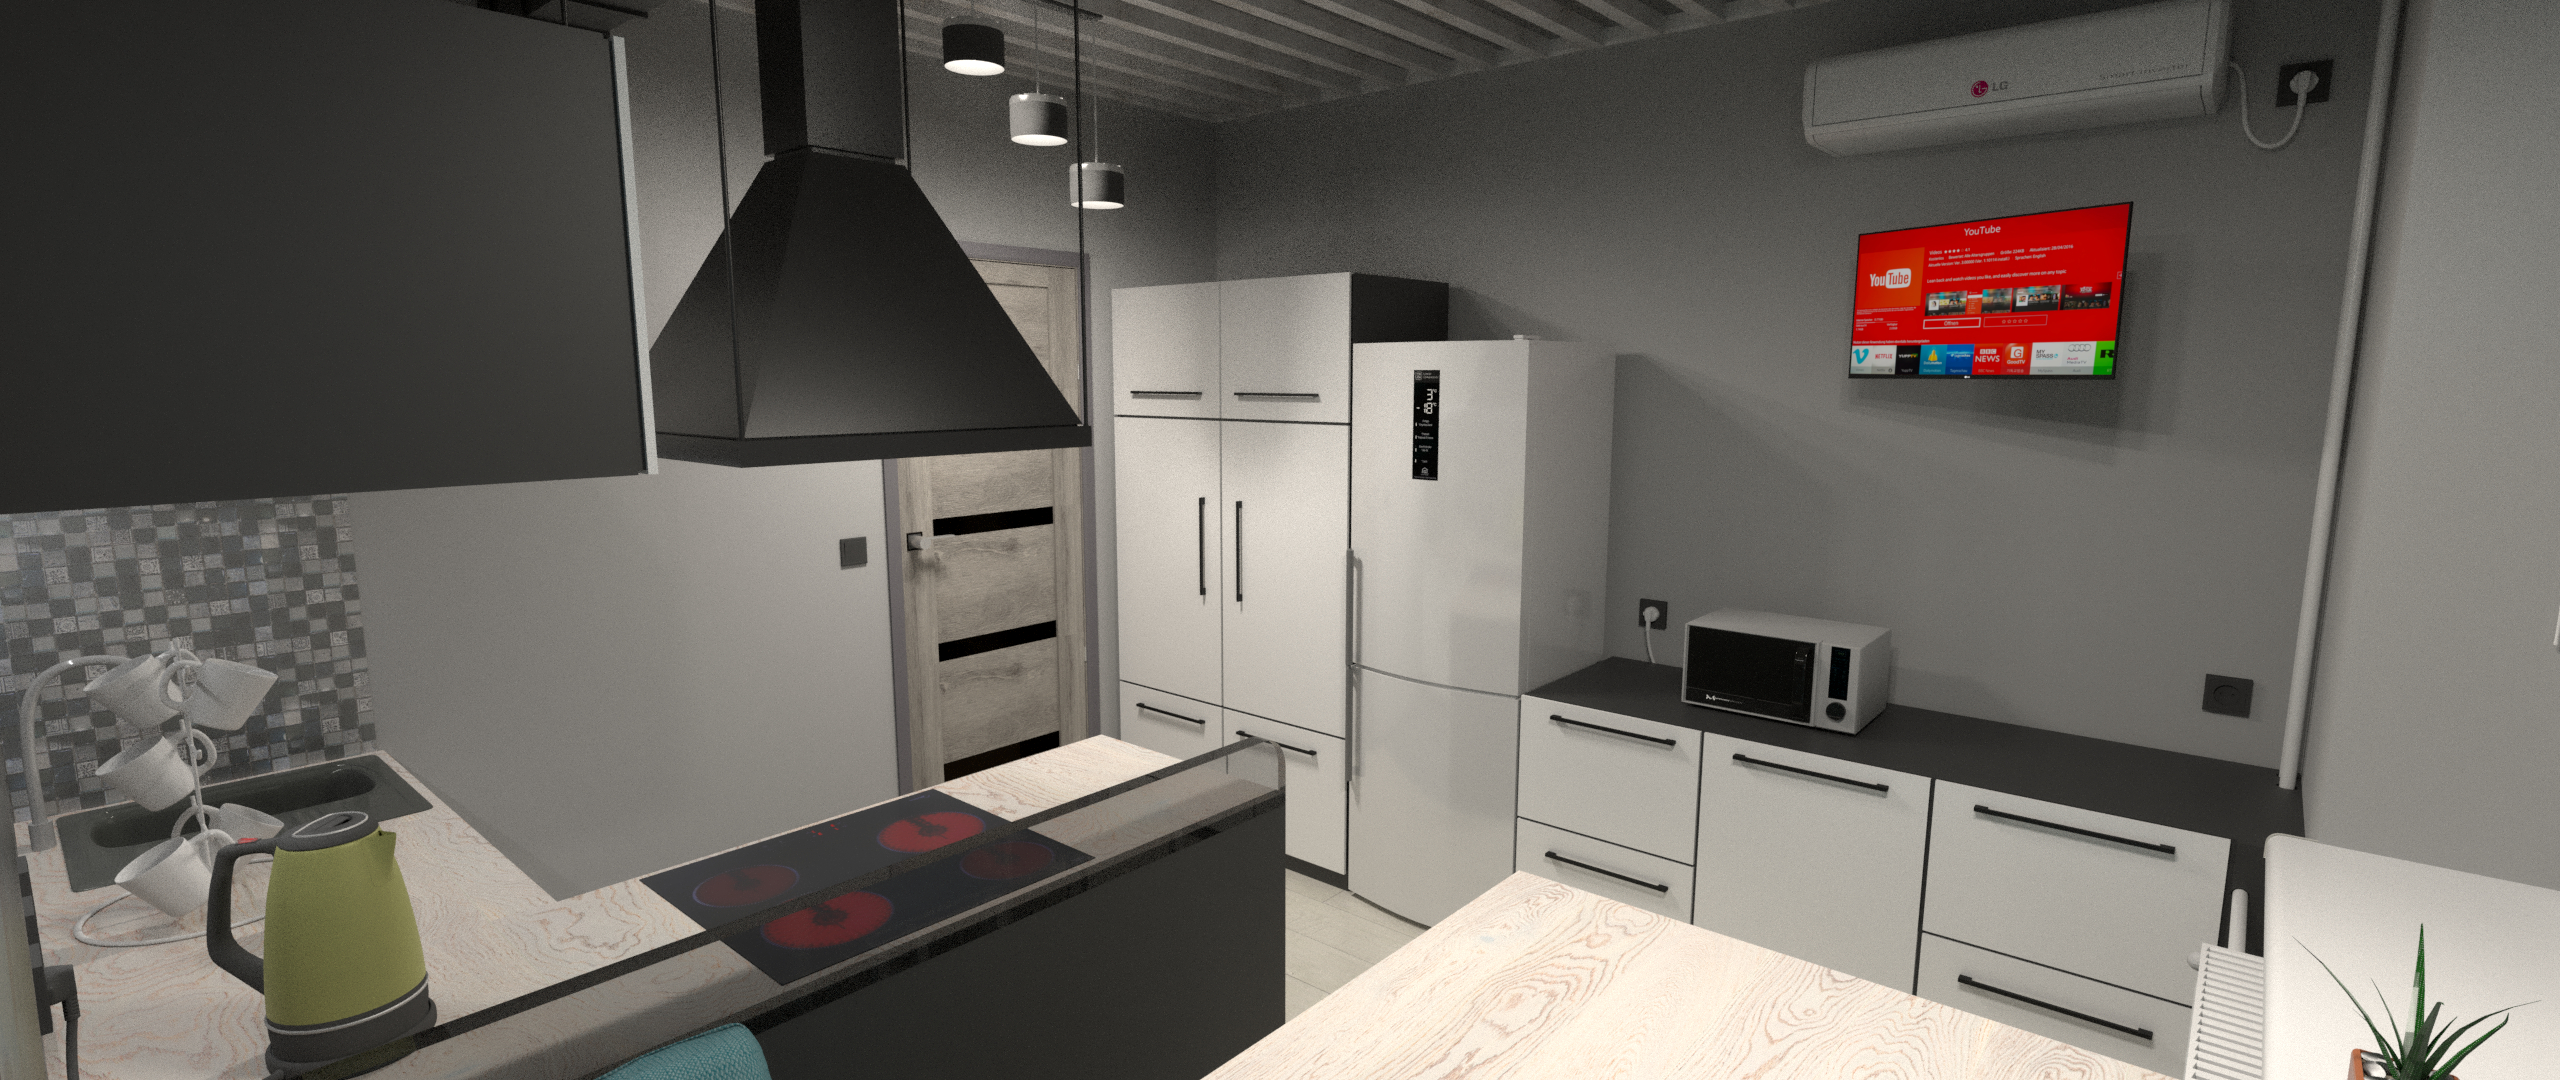 Кухня в Blender cycles render зображення